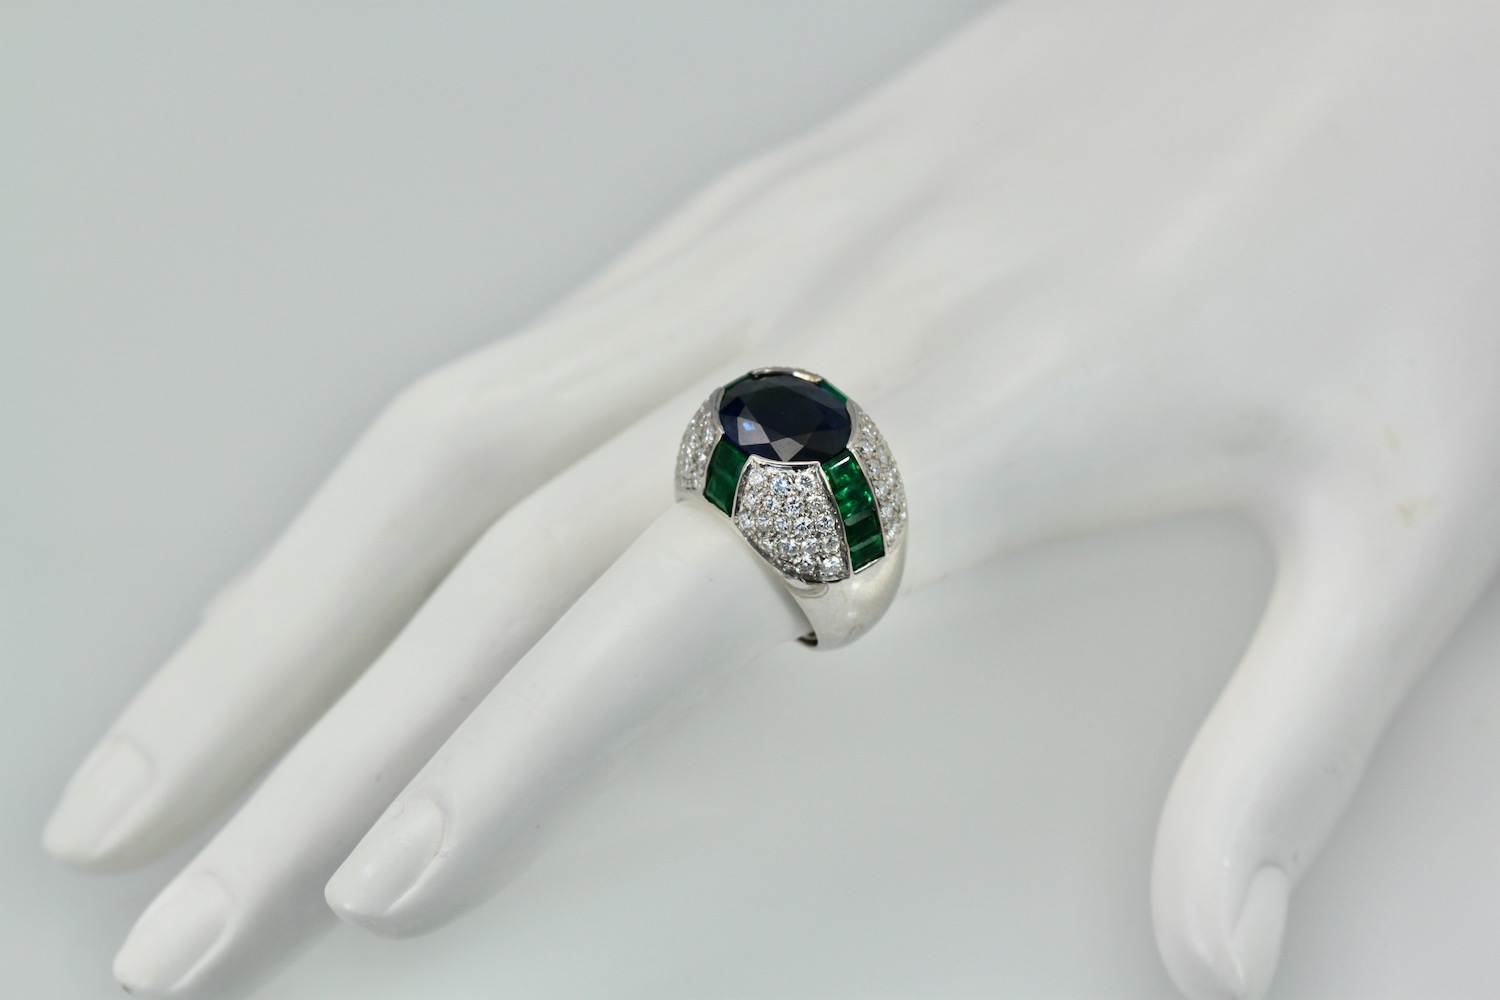 Bulgari Trombino Sapphire Emerald Diamond Ring – model